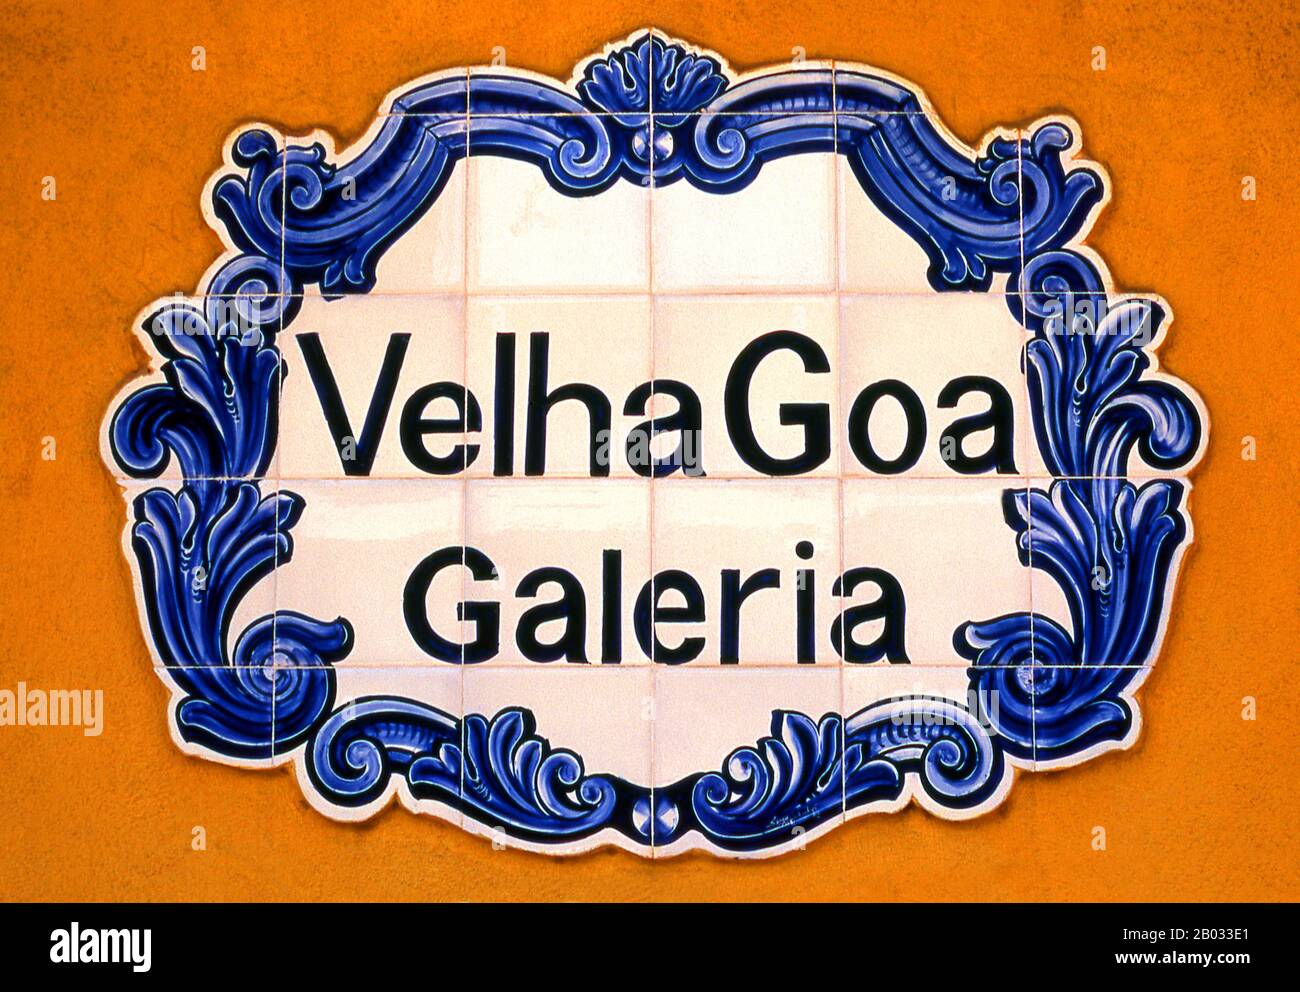 Il Velha Goa Galeria è specializzato in belle piastrelle dipinte a mano o azulejos. Azulejo, dall'arabo al zellige, è una forma di piastrelle di ceramica smaltata in stagno, dipinta in spagnolo e portoghese. Azulejos si trova all'interno e all'esterno di chiese, palazzi, case ordinarie, scuole, e oggi, ristoranti, bar e anche ferrovie o stazioni della metropolitana. Essi non erano utilizzati solo come forma d'arte ornamentale, ma avevano anche una specifica capacità funzionale come il controllo della temperatura nelle abitazioni. Foto Stock